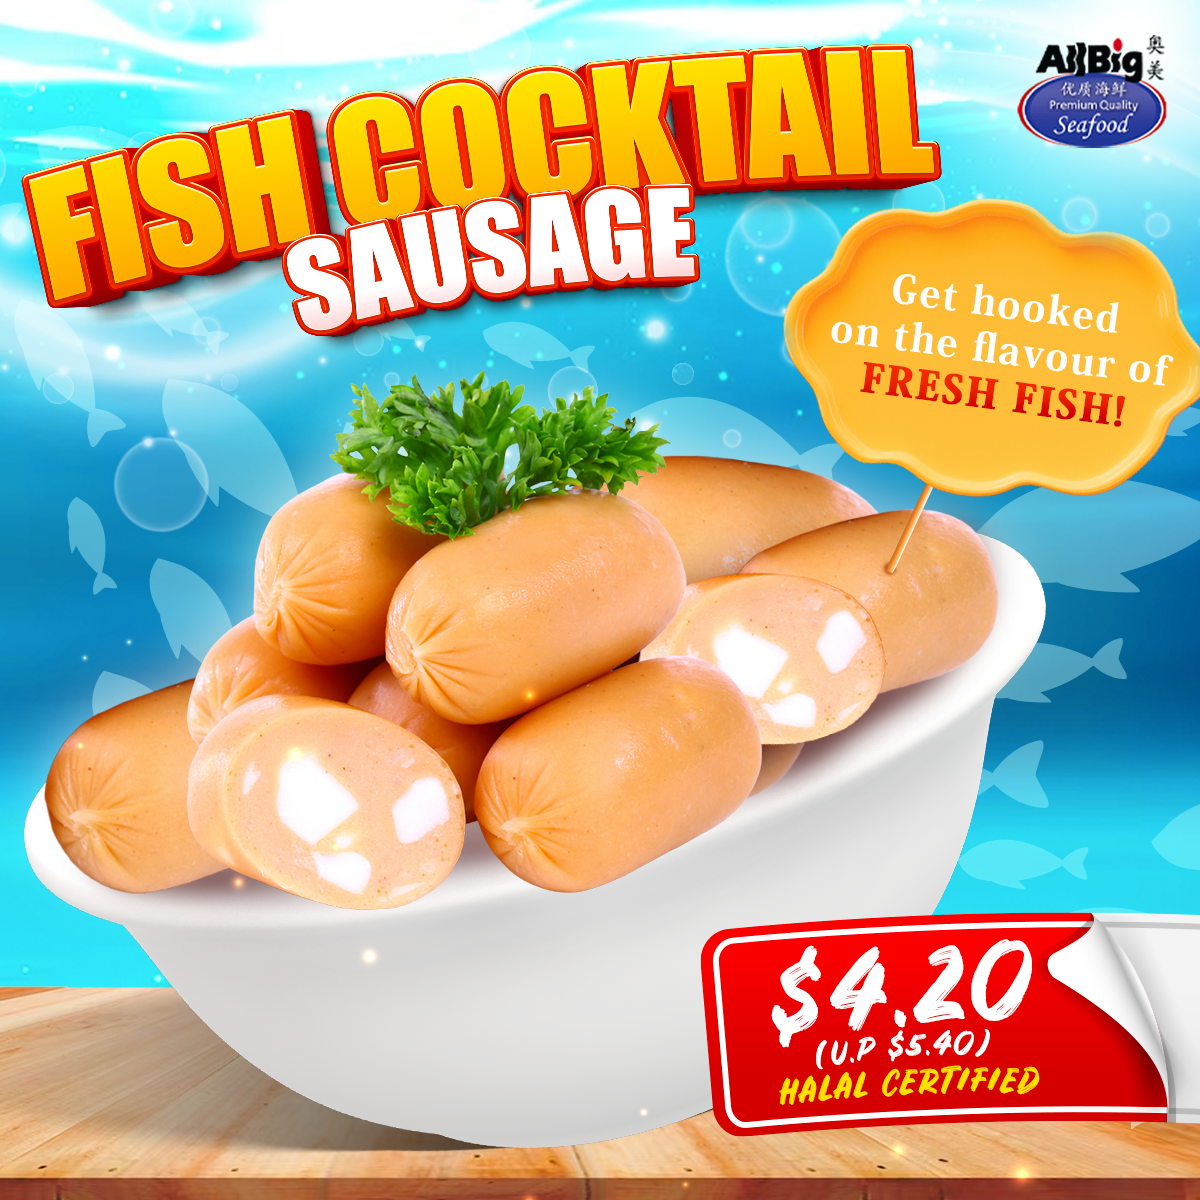 Fish Cocktail Sausage (500G)